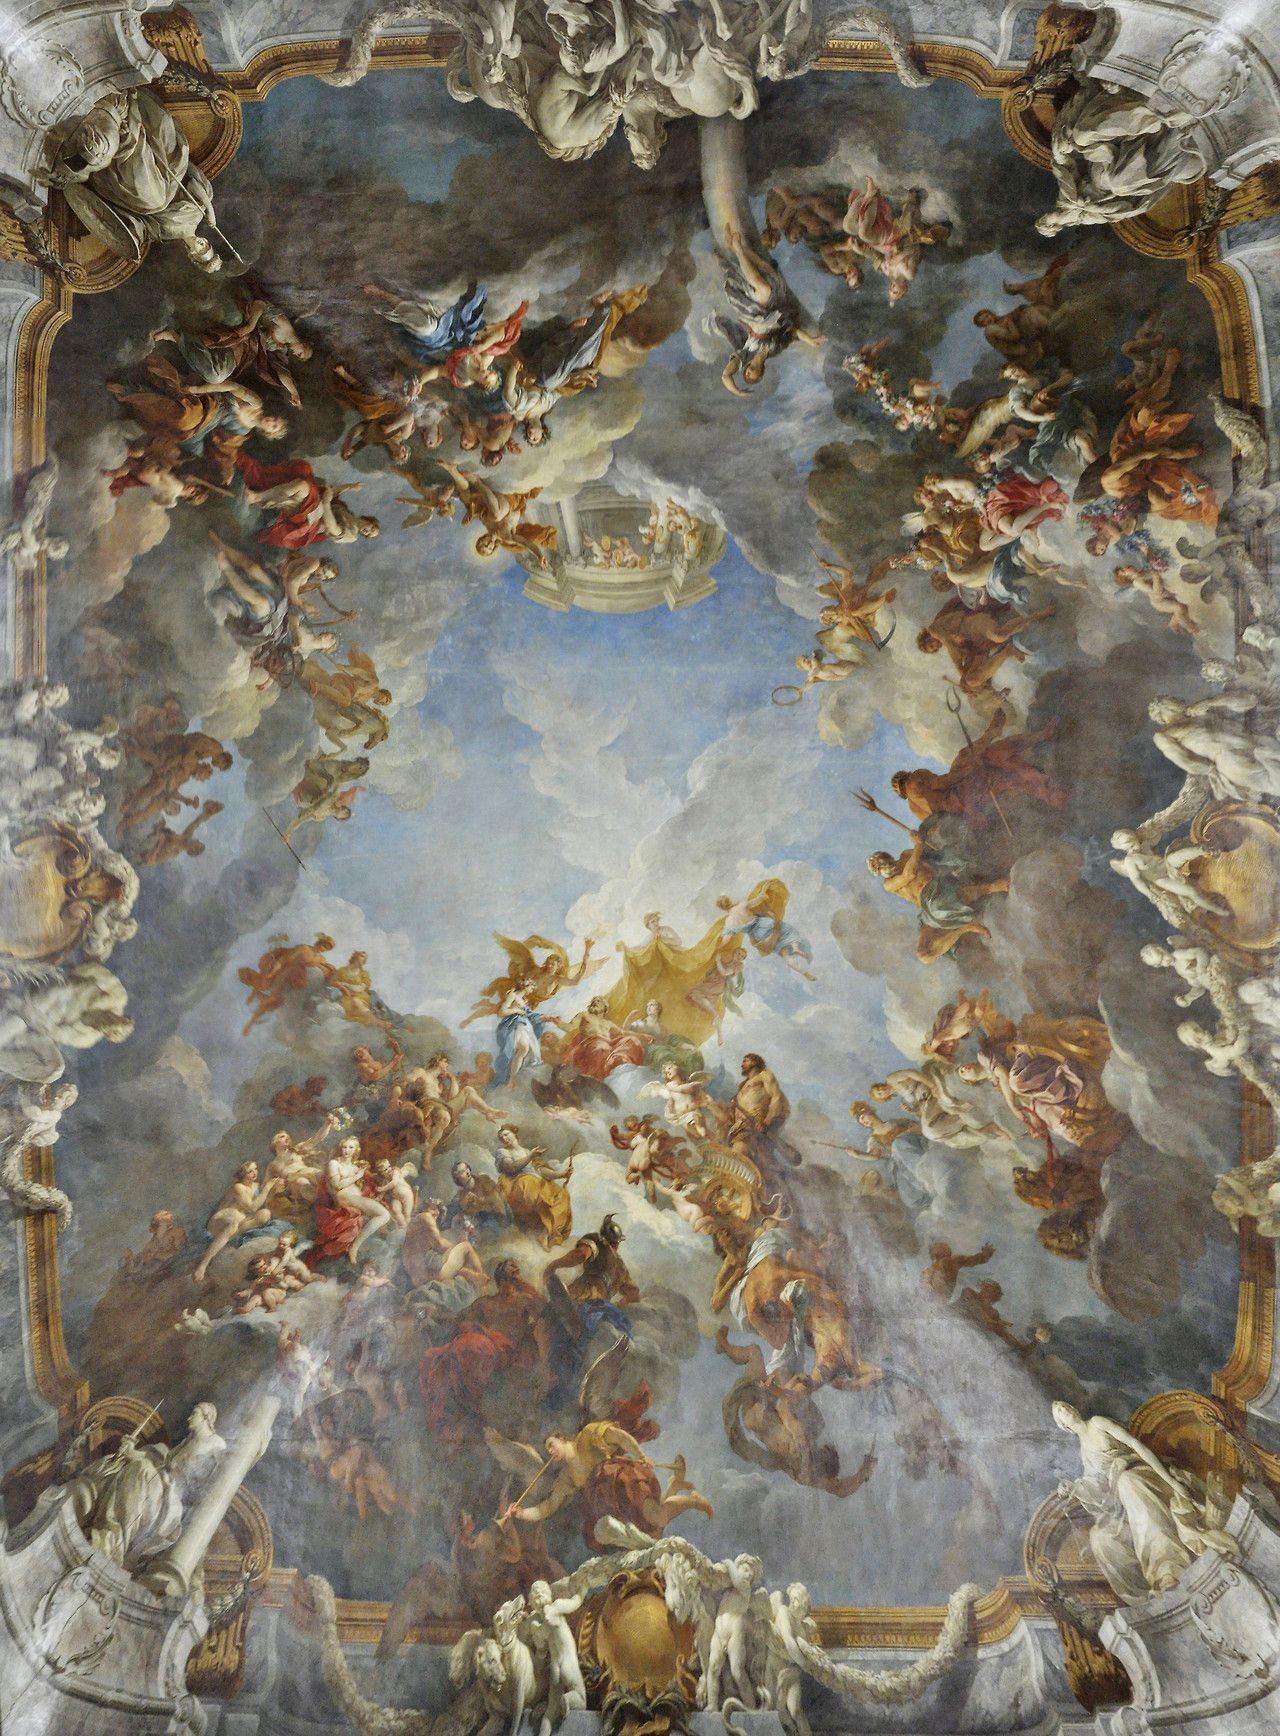 Renaissance Art 4k Wallpapers Top Free Renaissance Art 4k Backgrounds ...